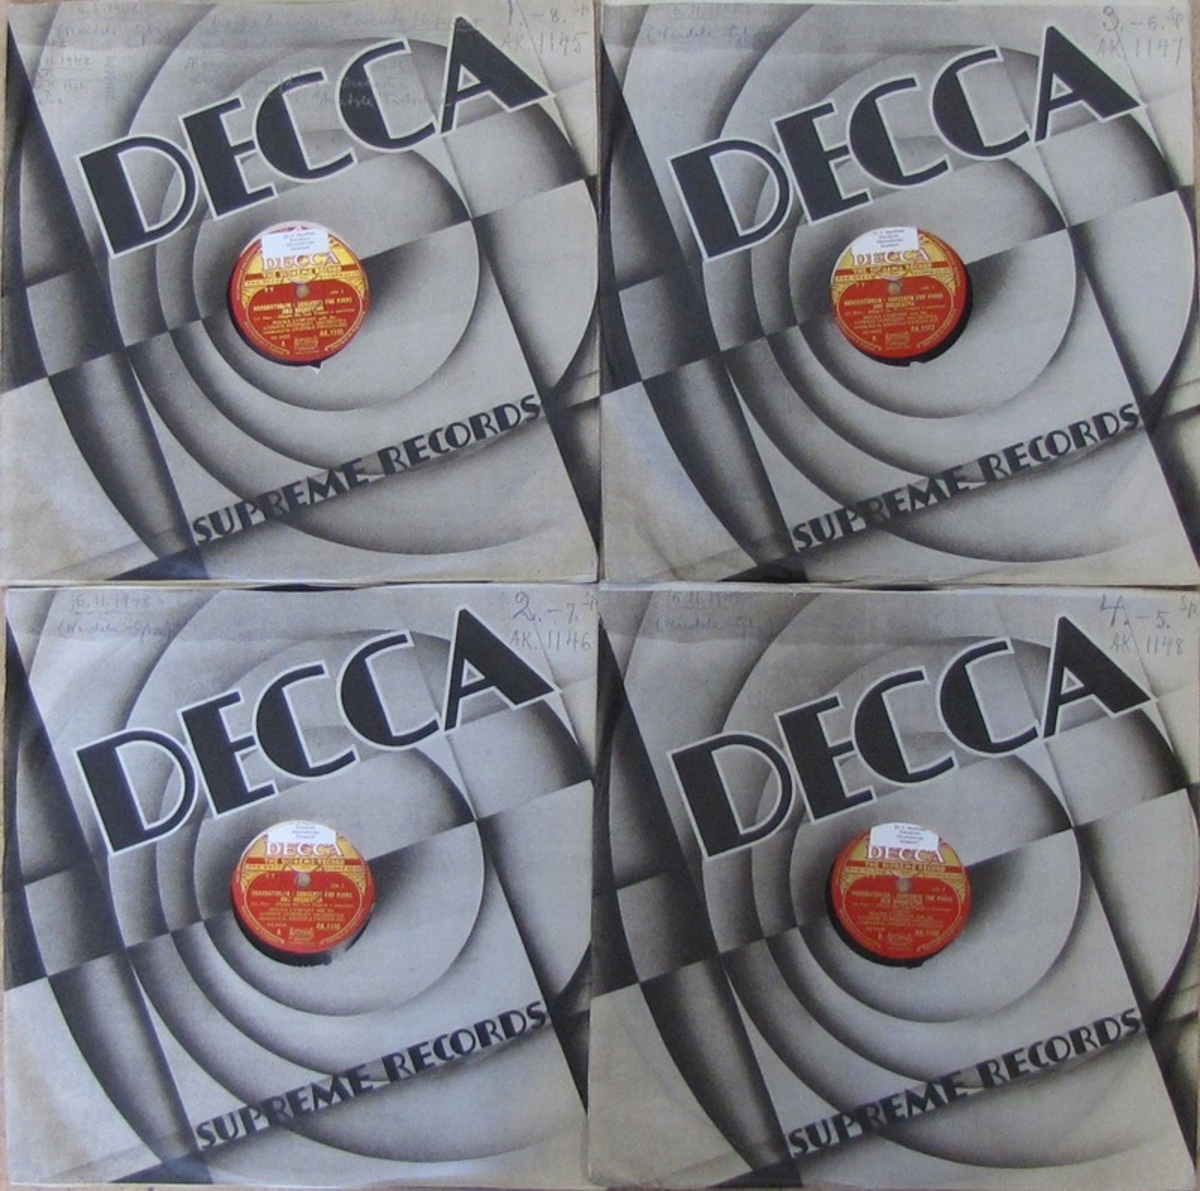 Vinylskivor av märket Decca